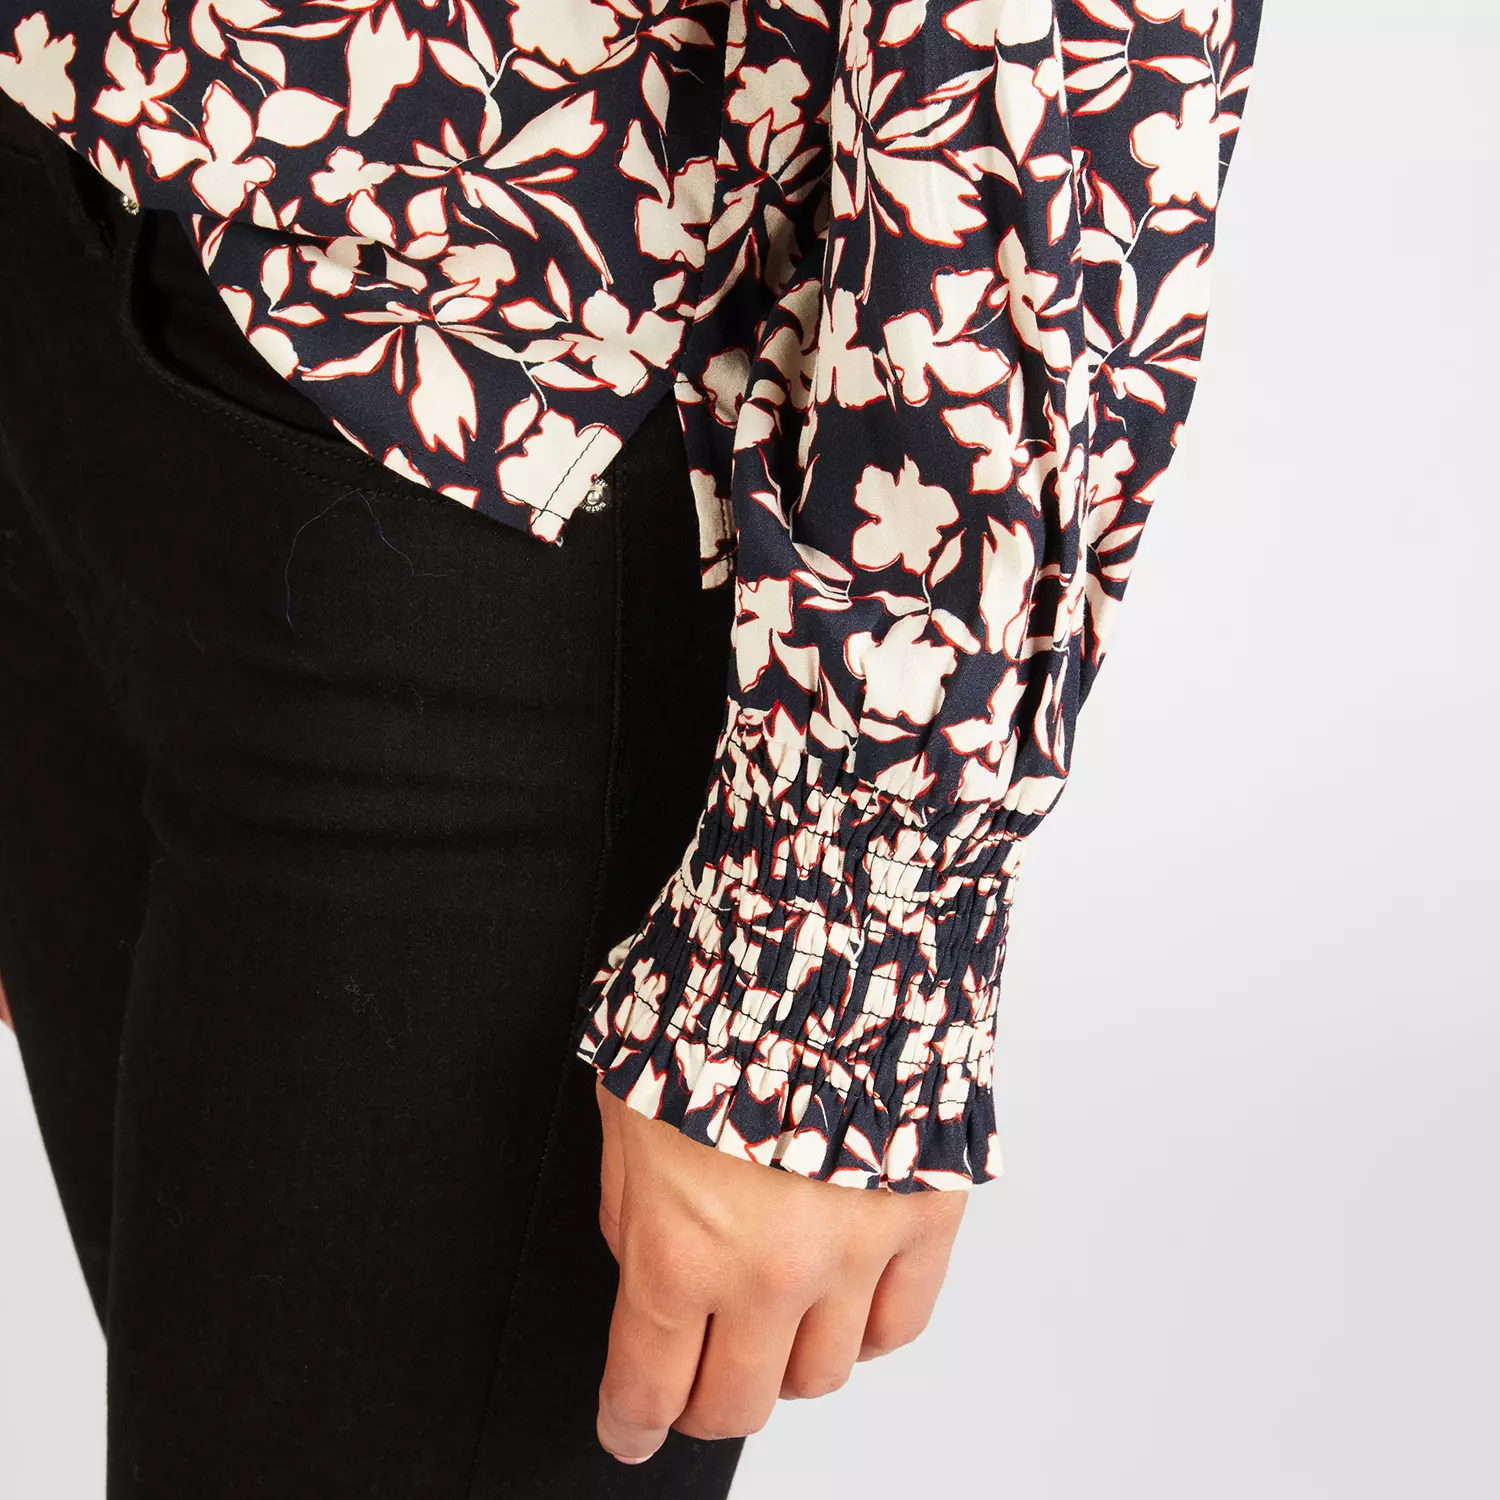 lovely sisters - bedruckte Bluse May - Blumenprint schwarz-rot-weiß - V-Ausschnitt - Raffung am Arm